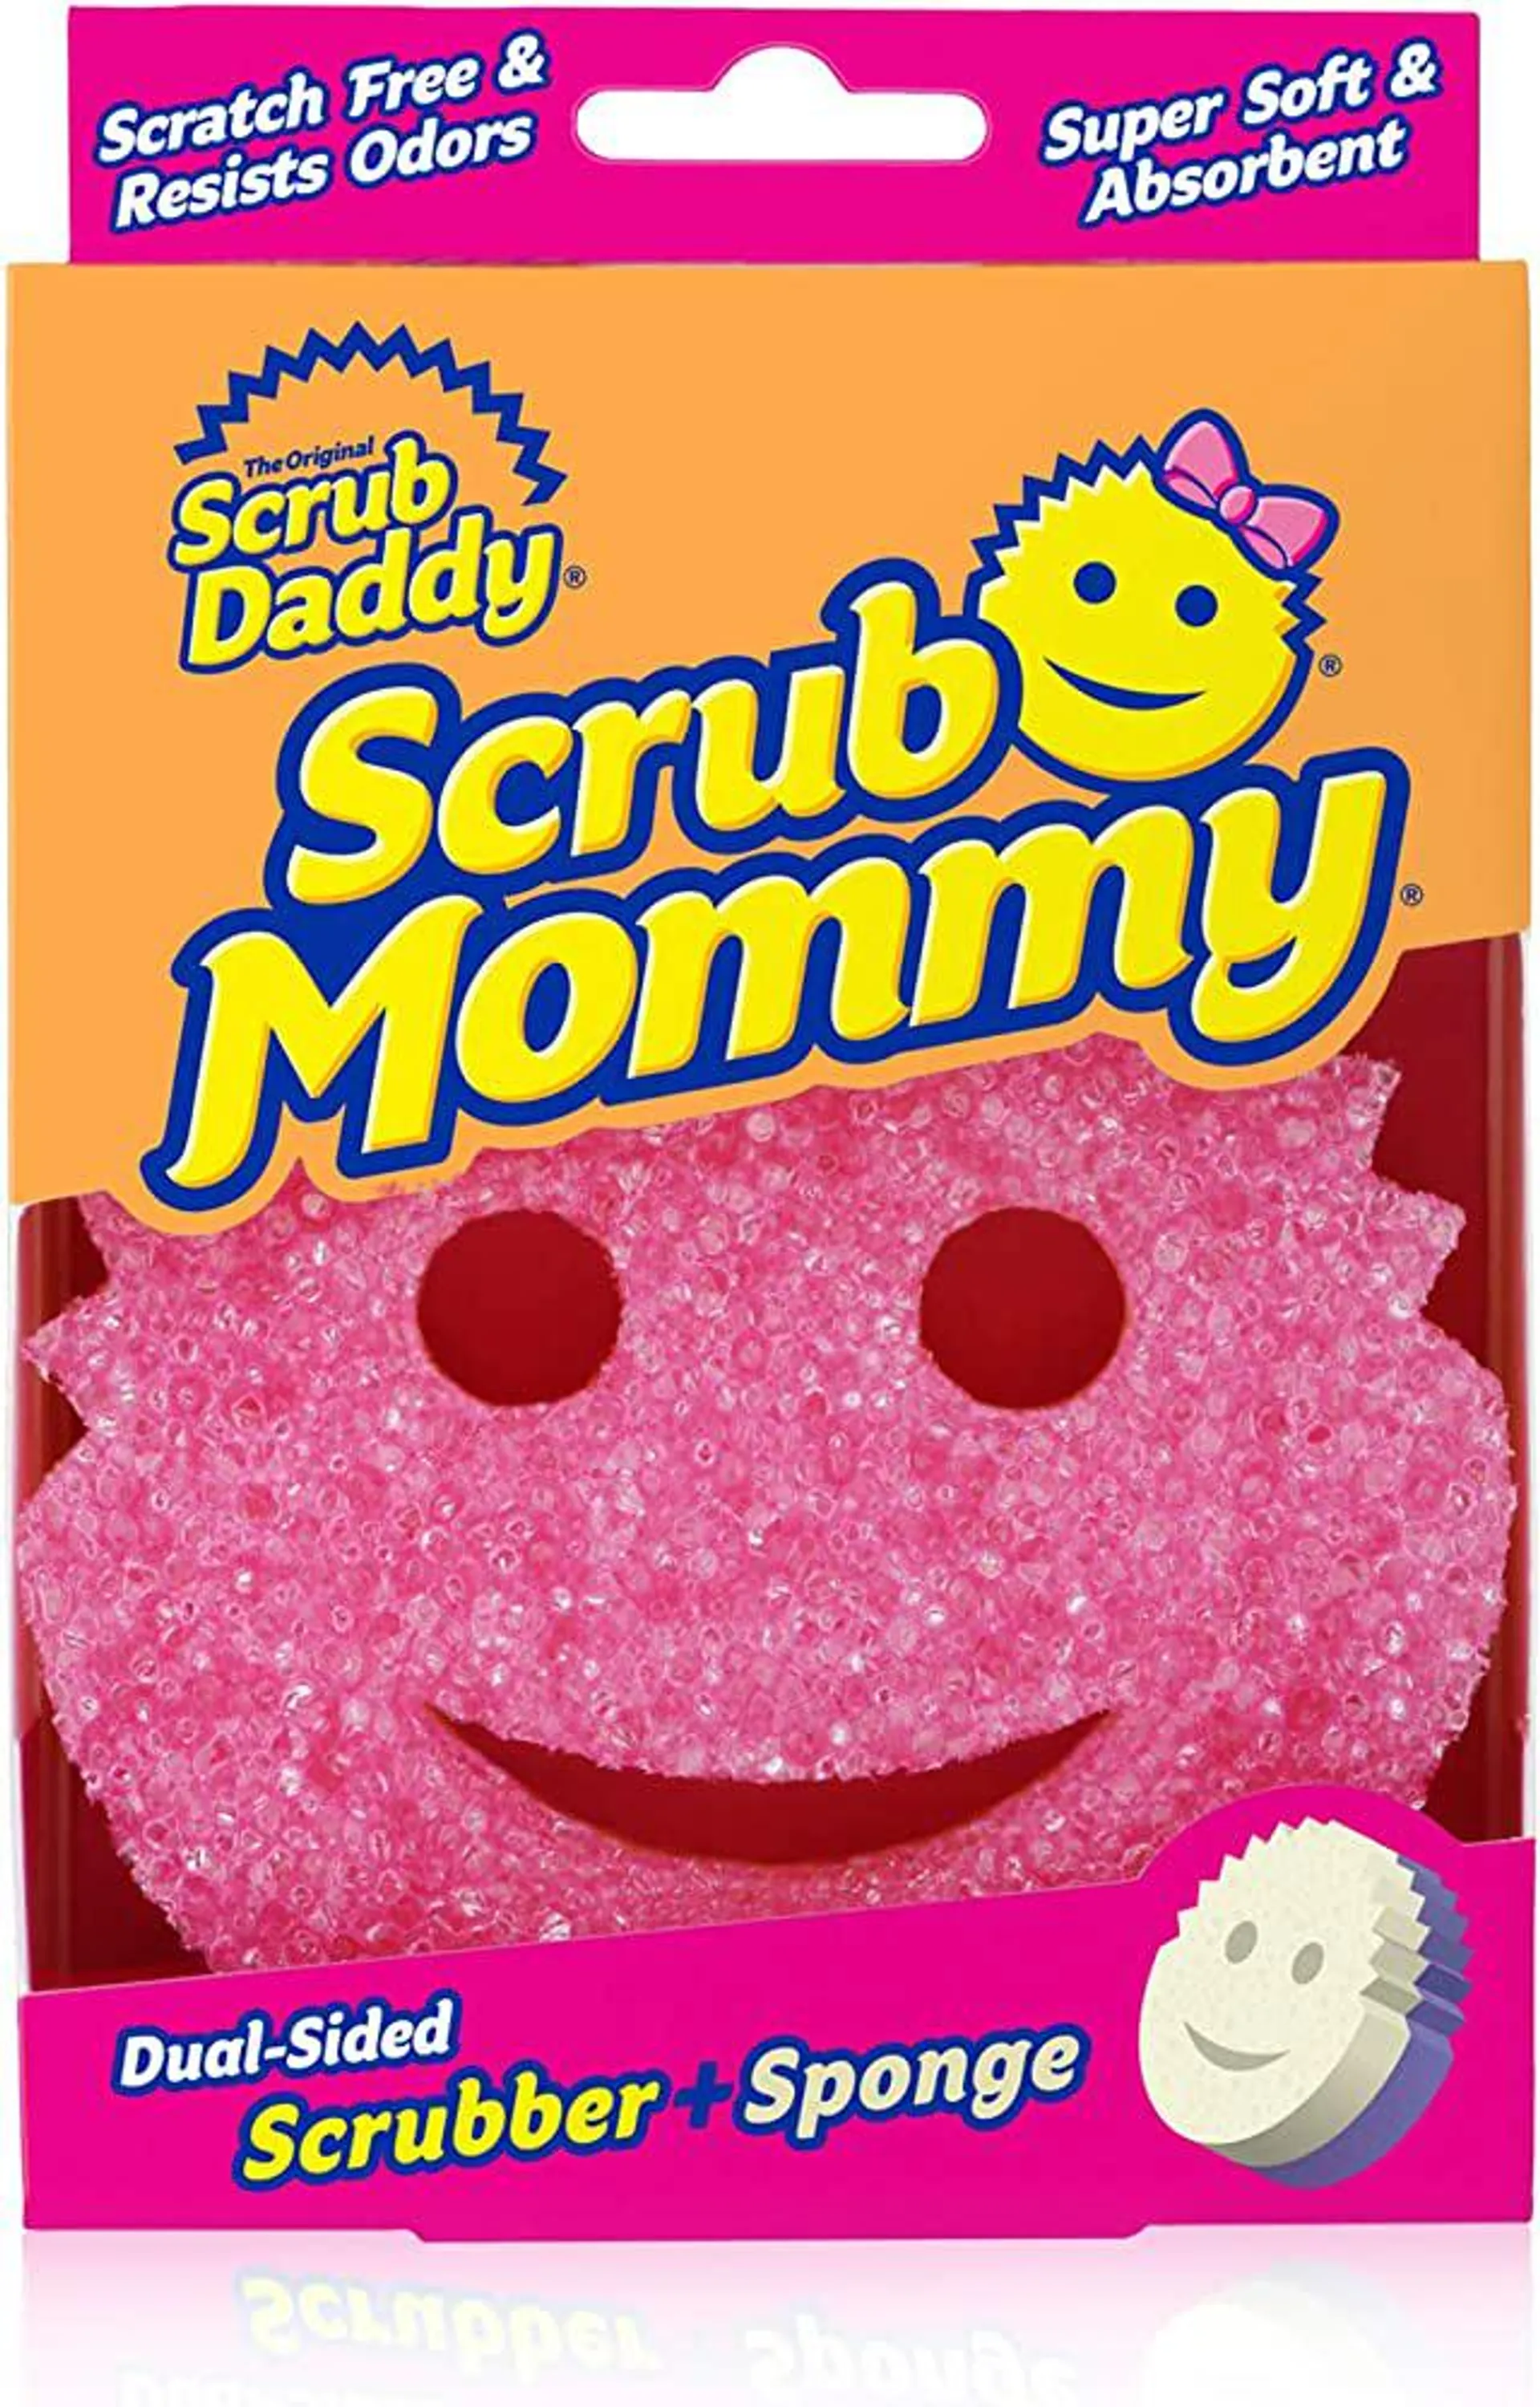 Estropajo esponja scrub daddy scrub mommy